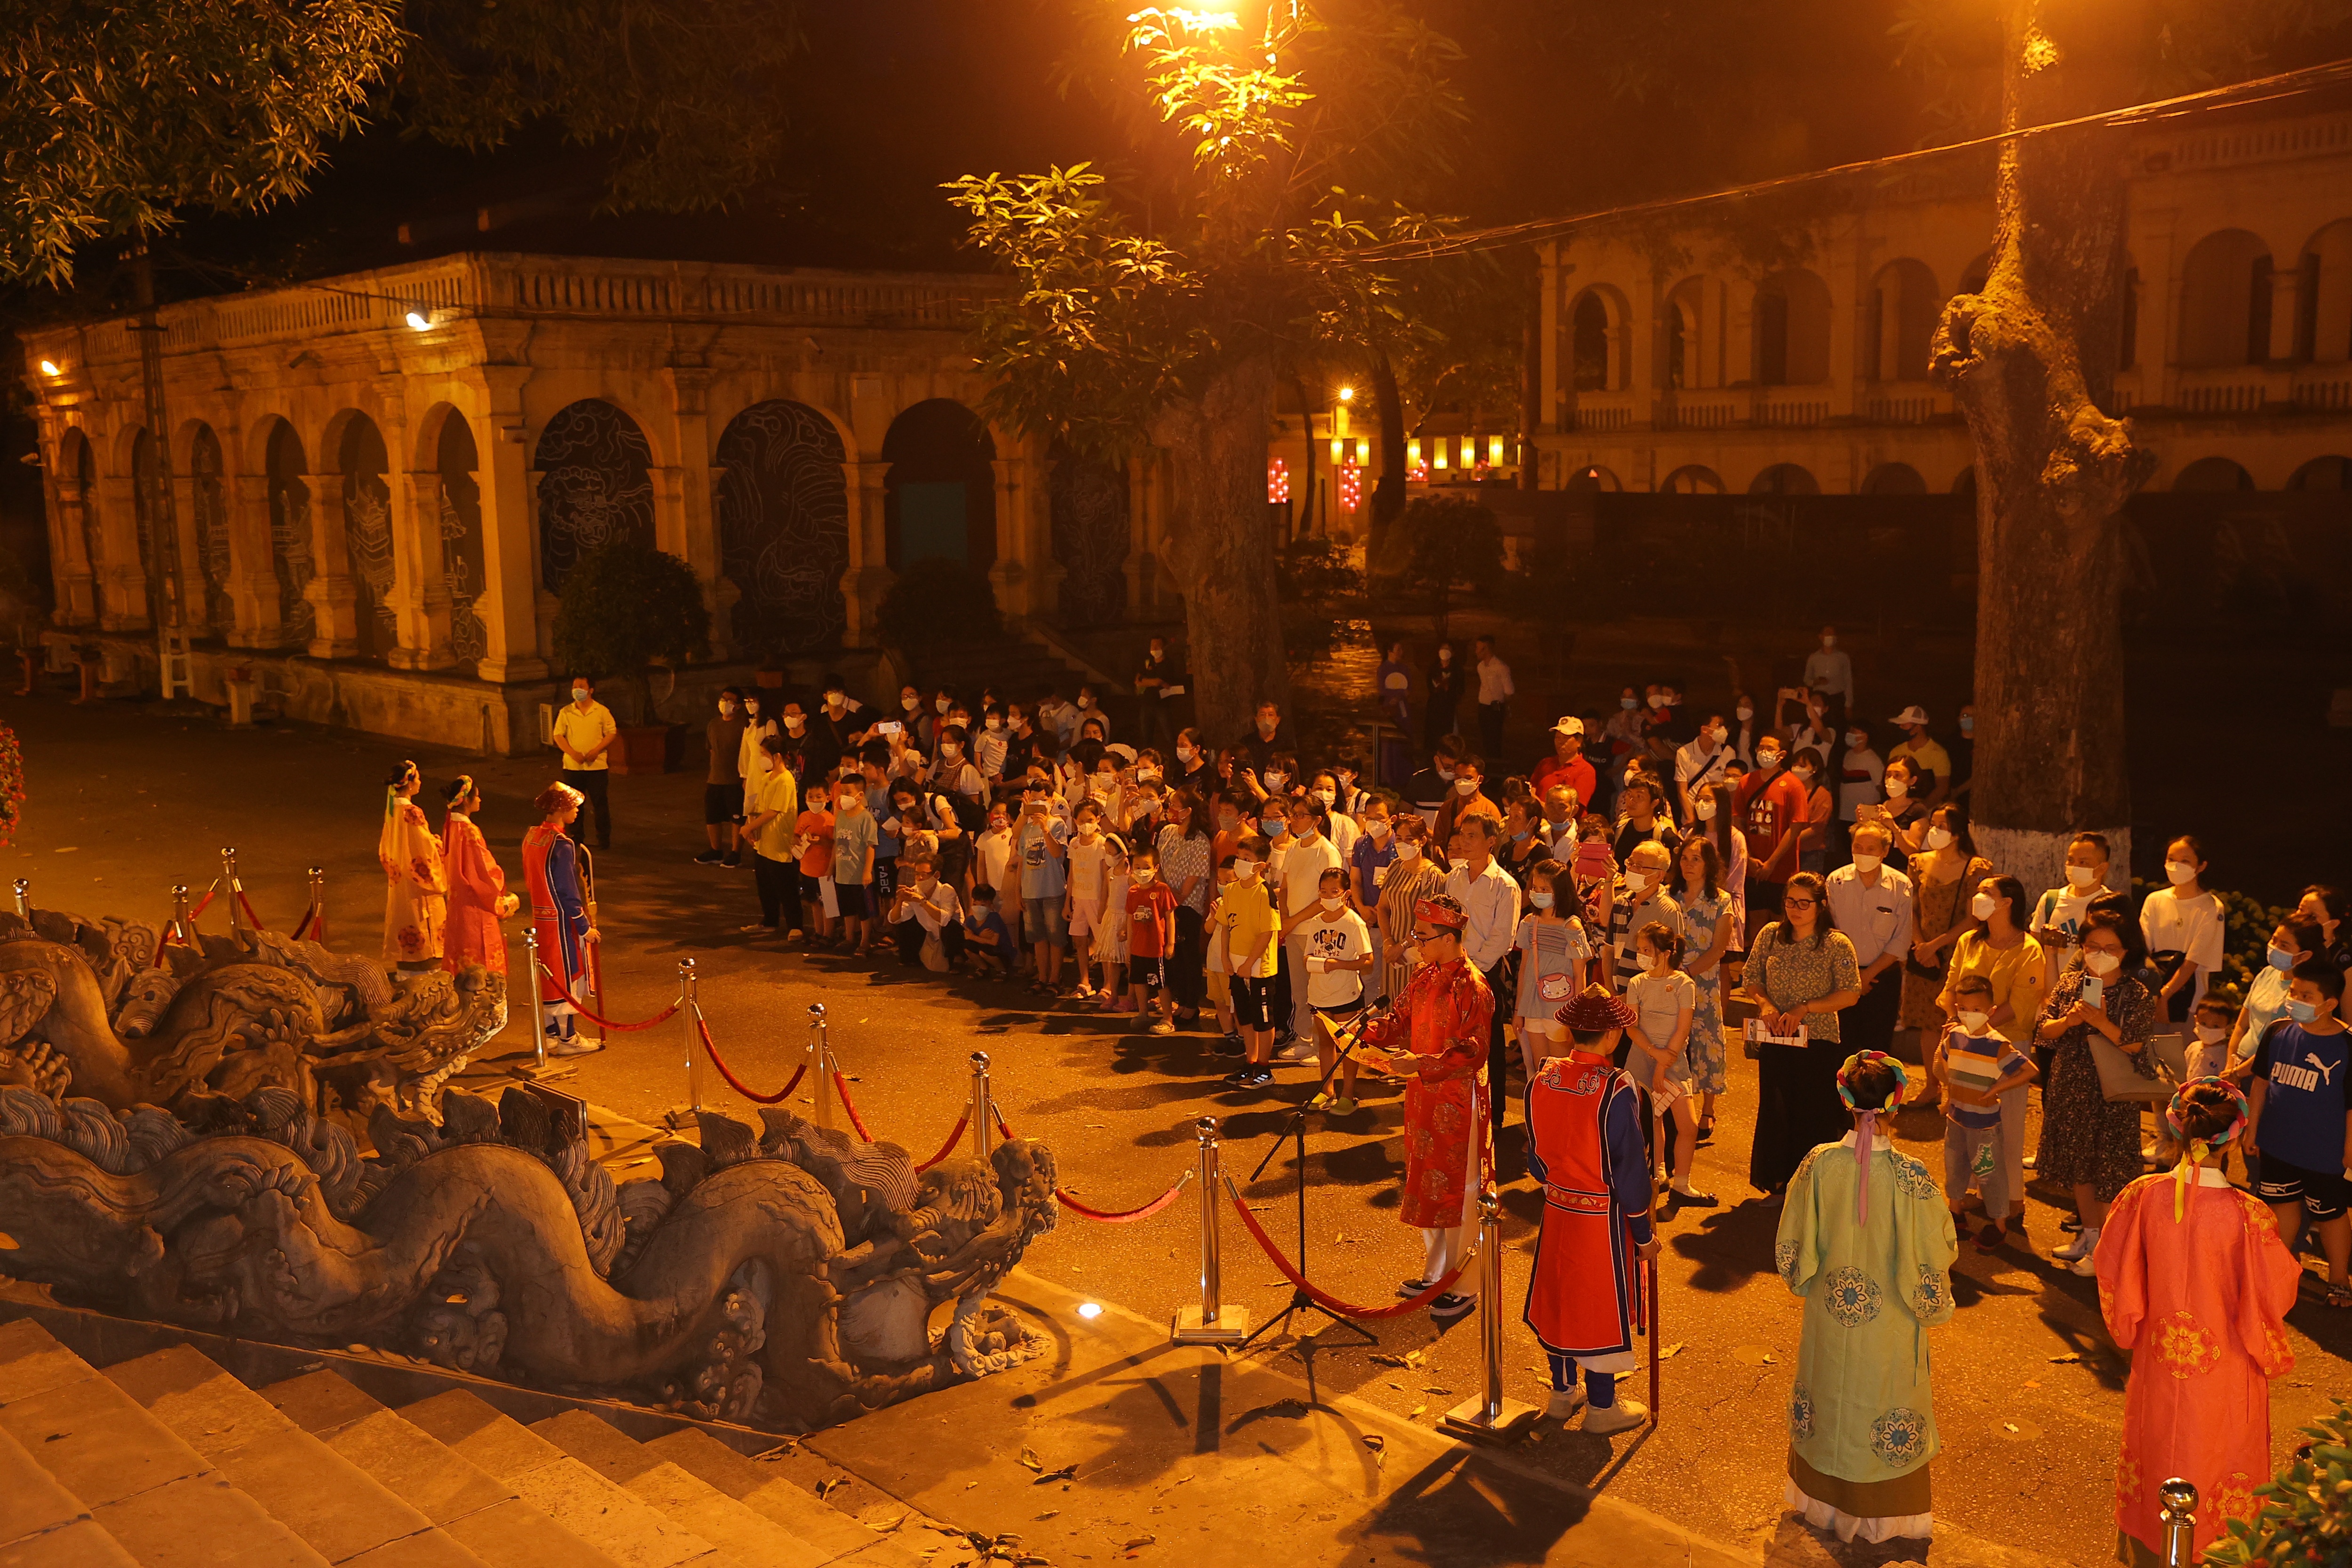 Lộng lẫy đêm hoàng cung tại Hoàng thành Thăng Long - 3